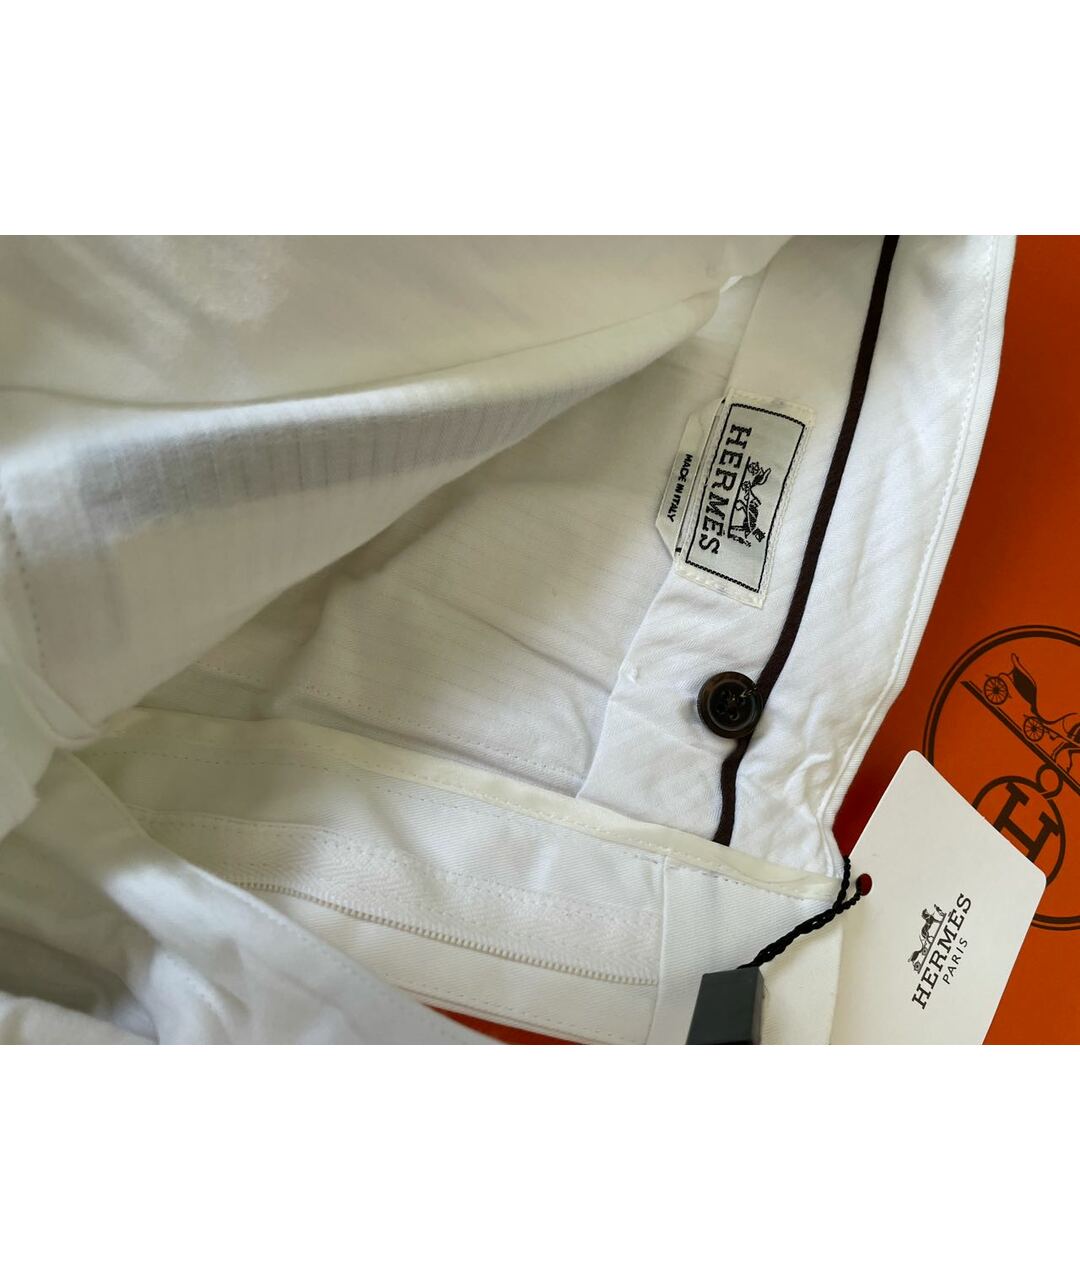 HERMES PRE-OWNED Белые хлопковые шорты, фото 5